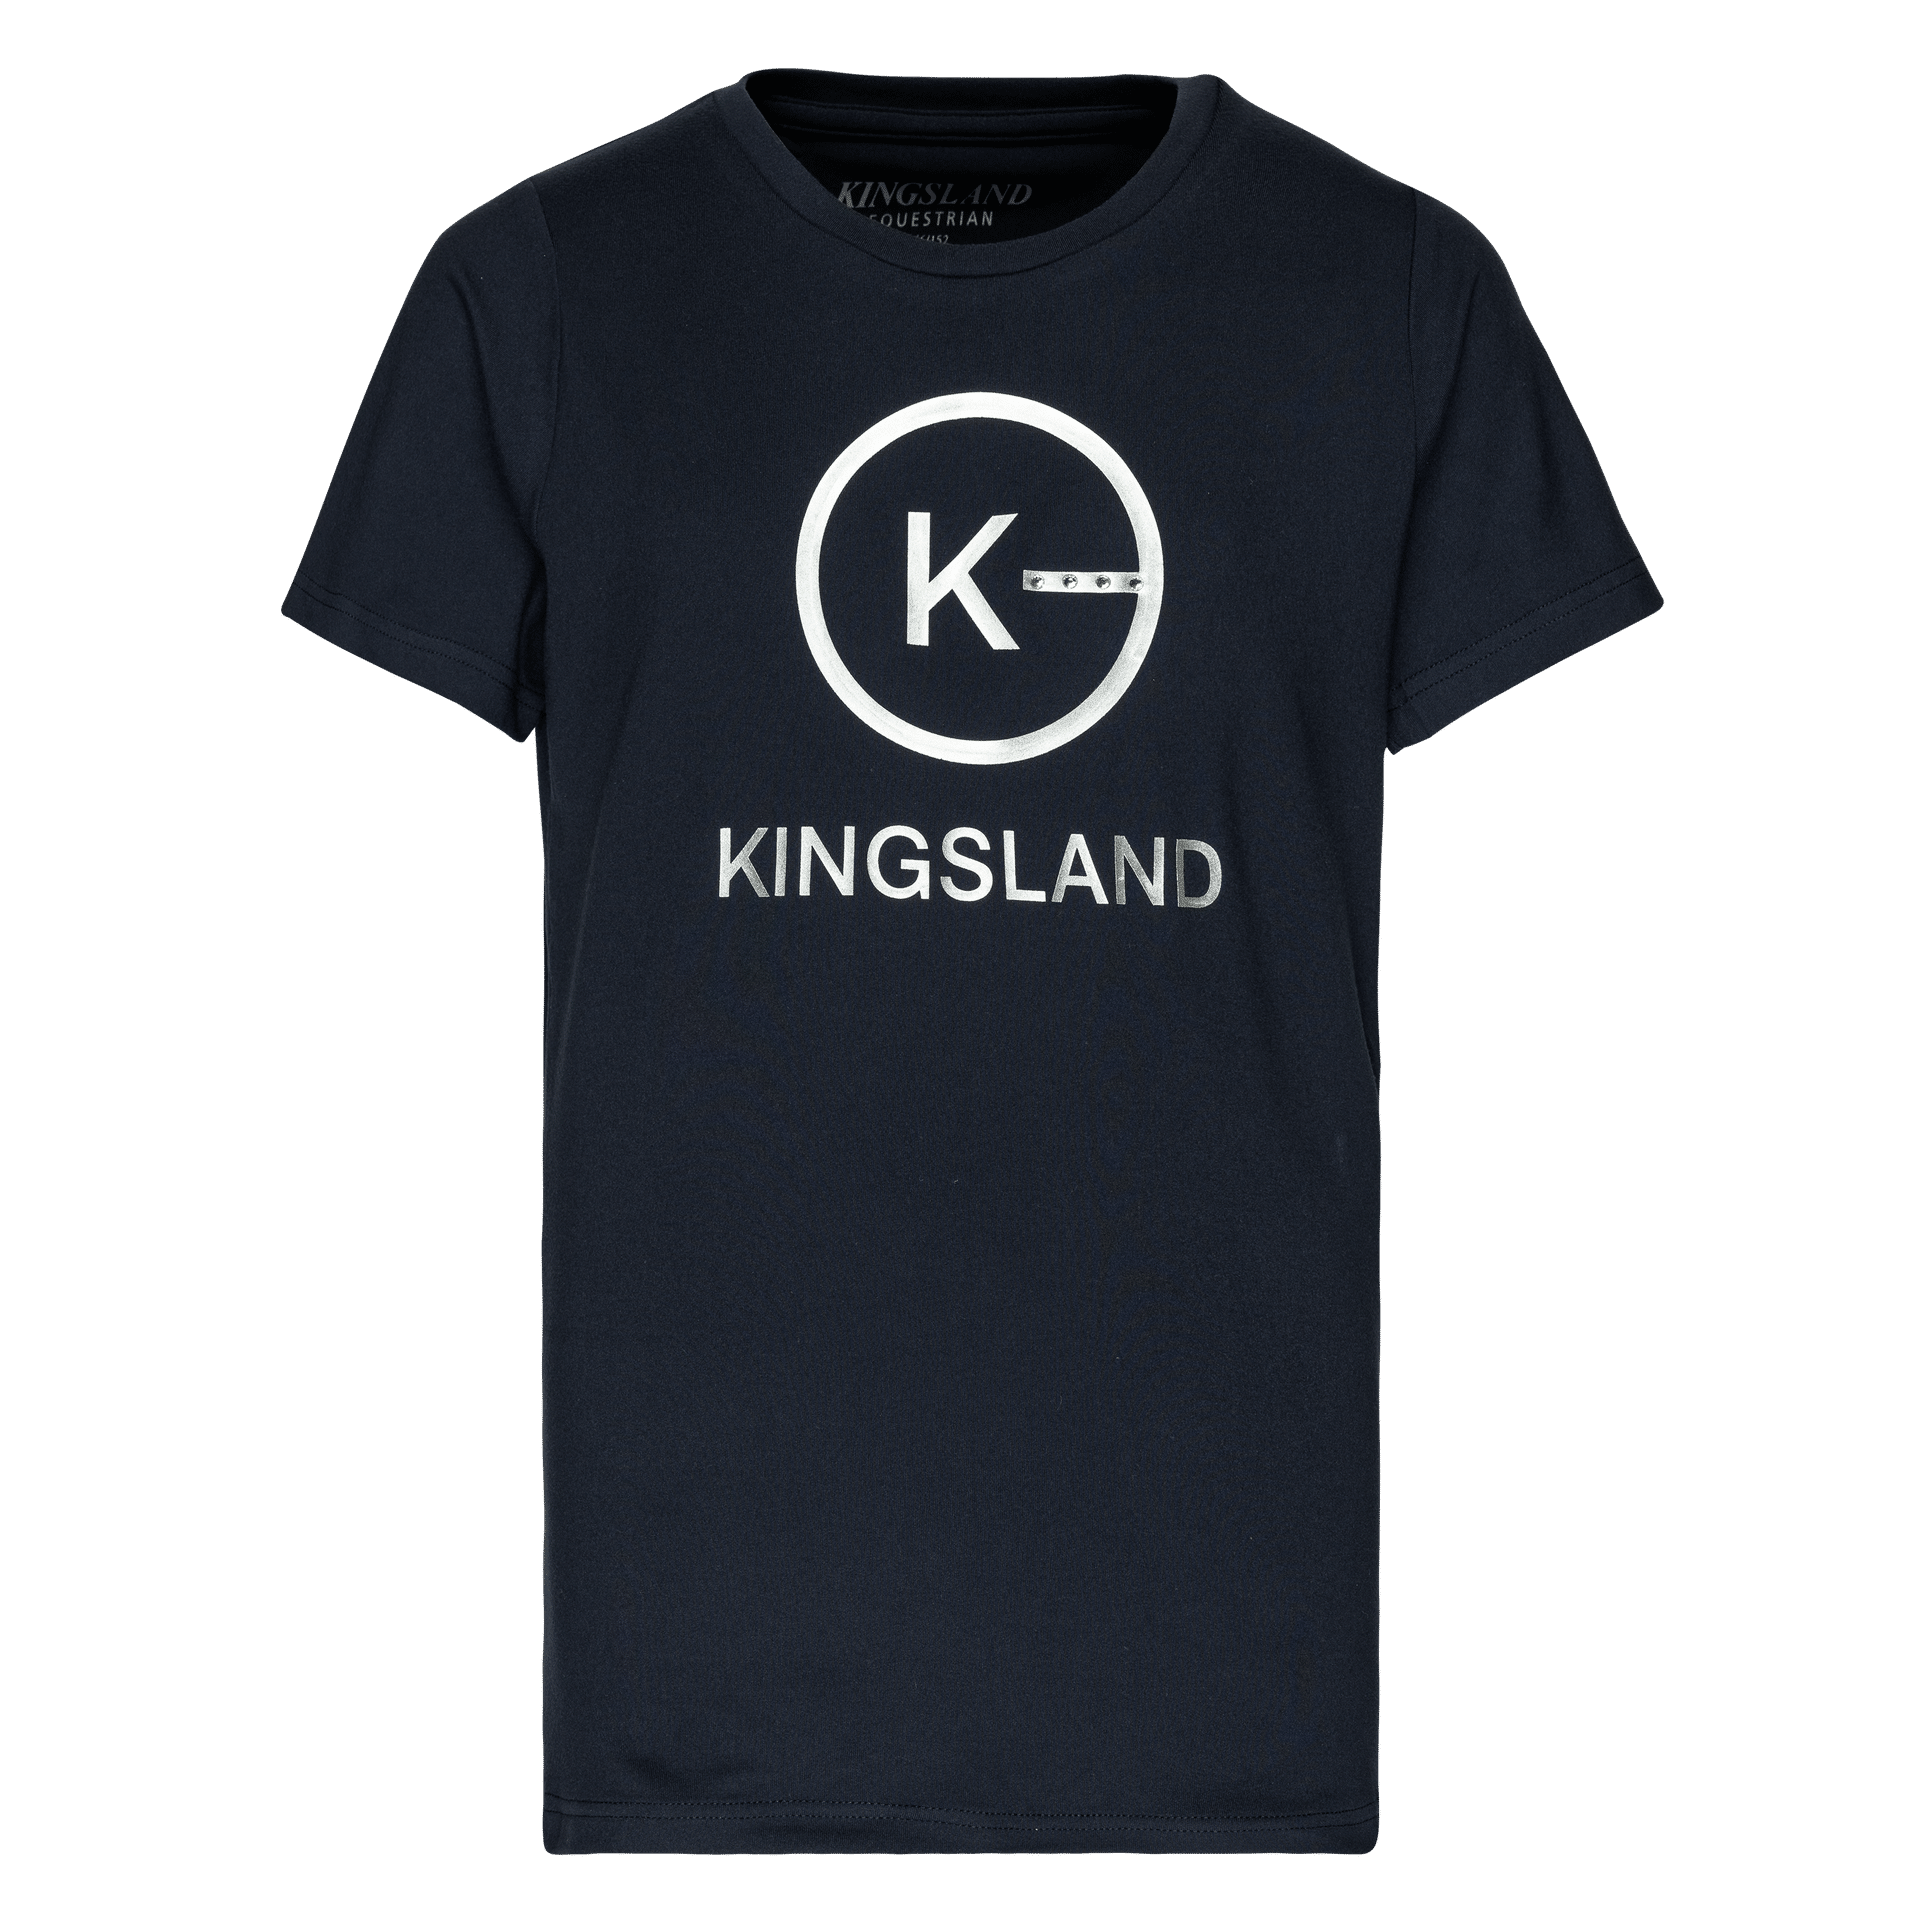 Sellerie - T-shirt kl hellen - enfant kingsland - Enfant